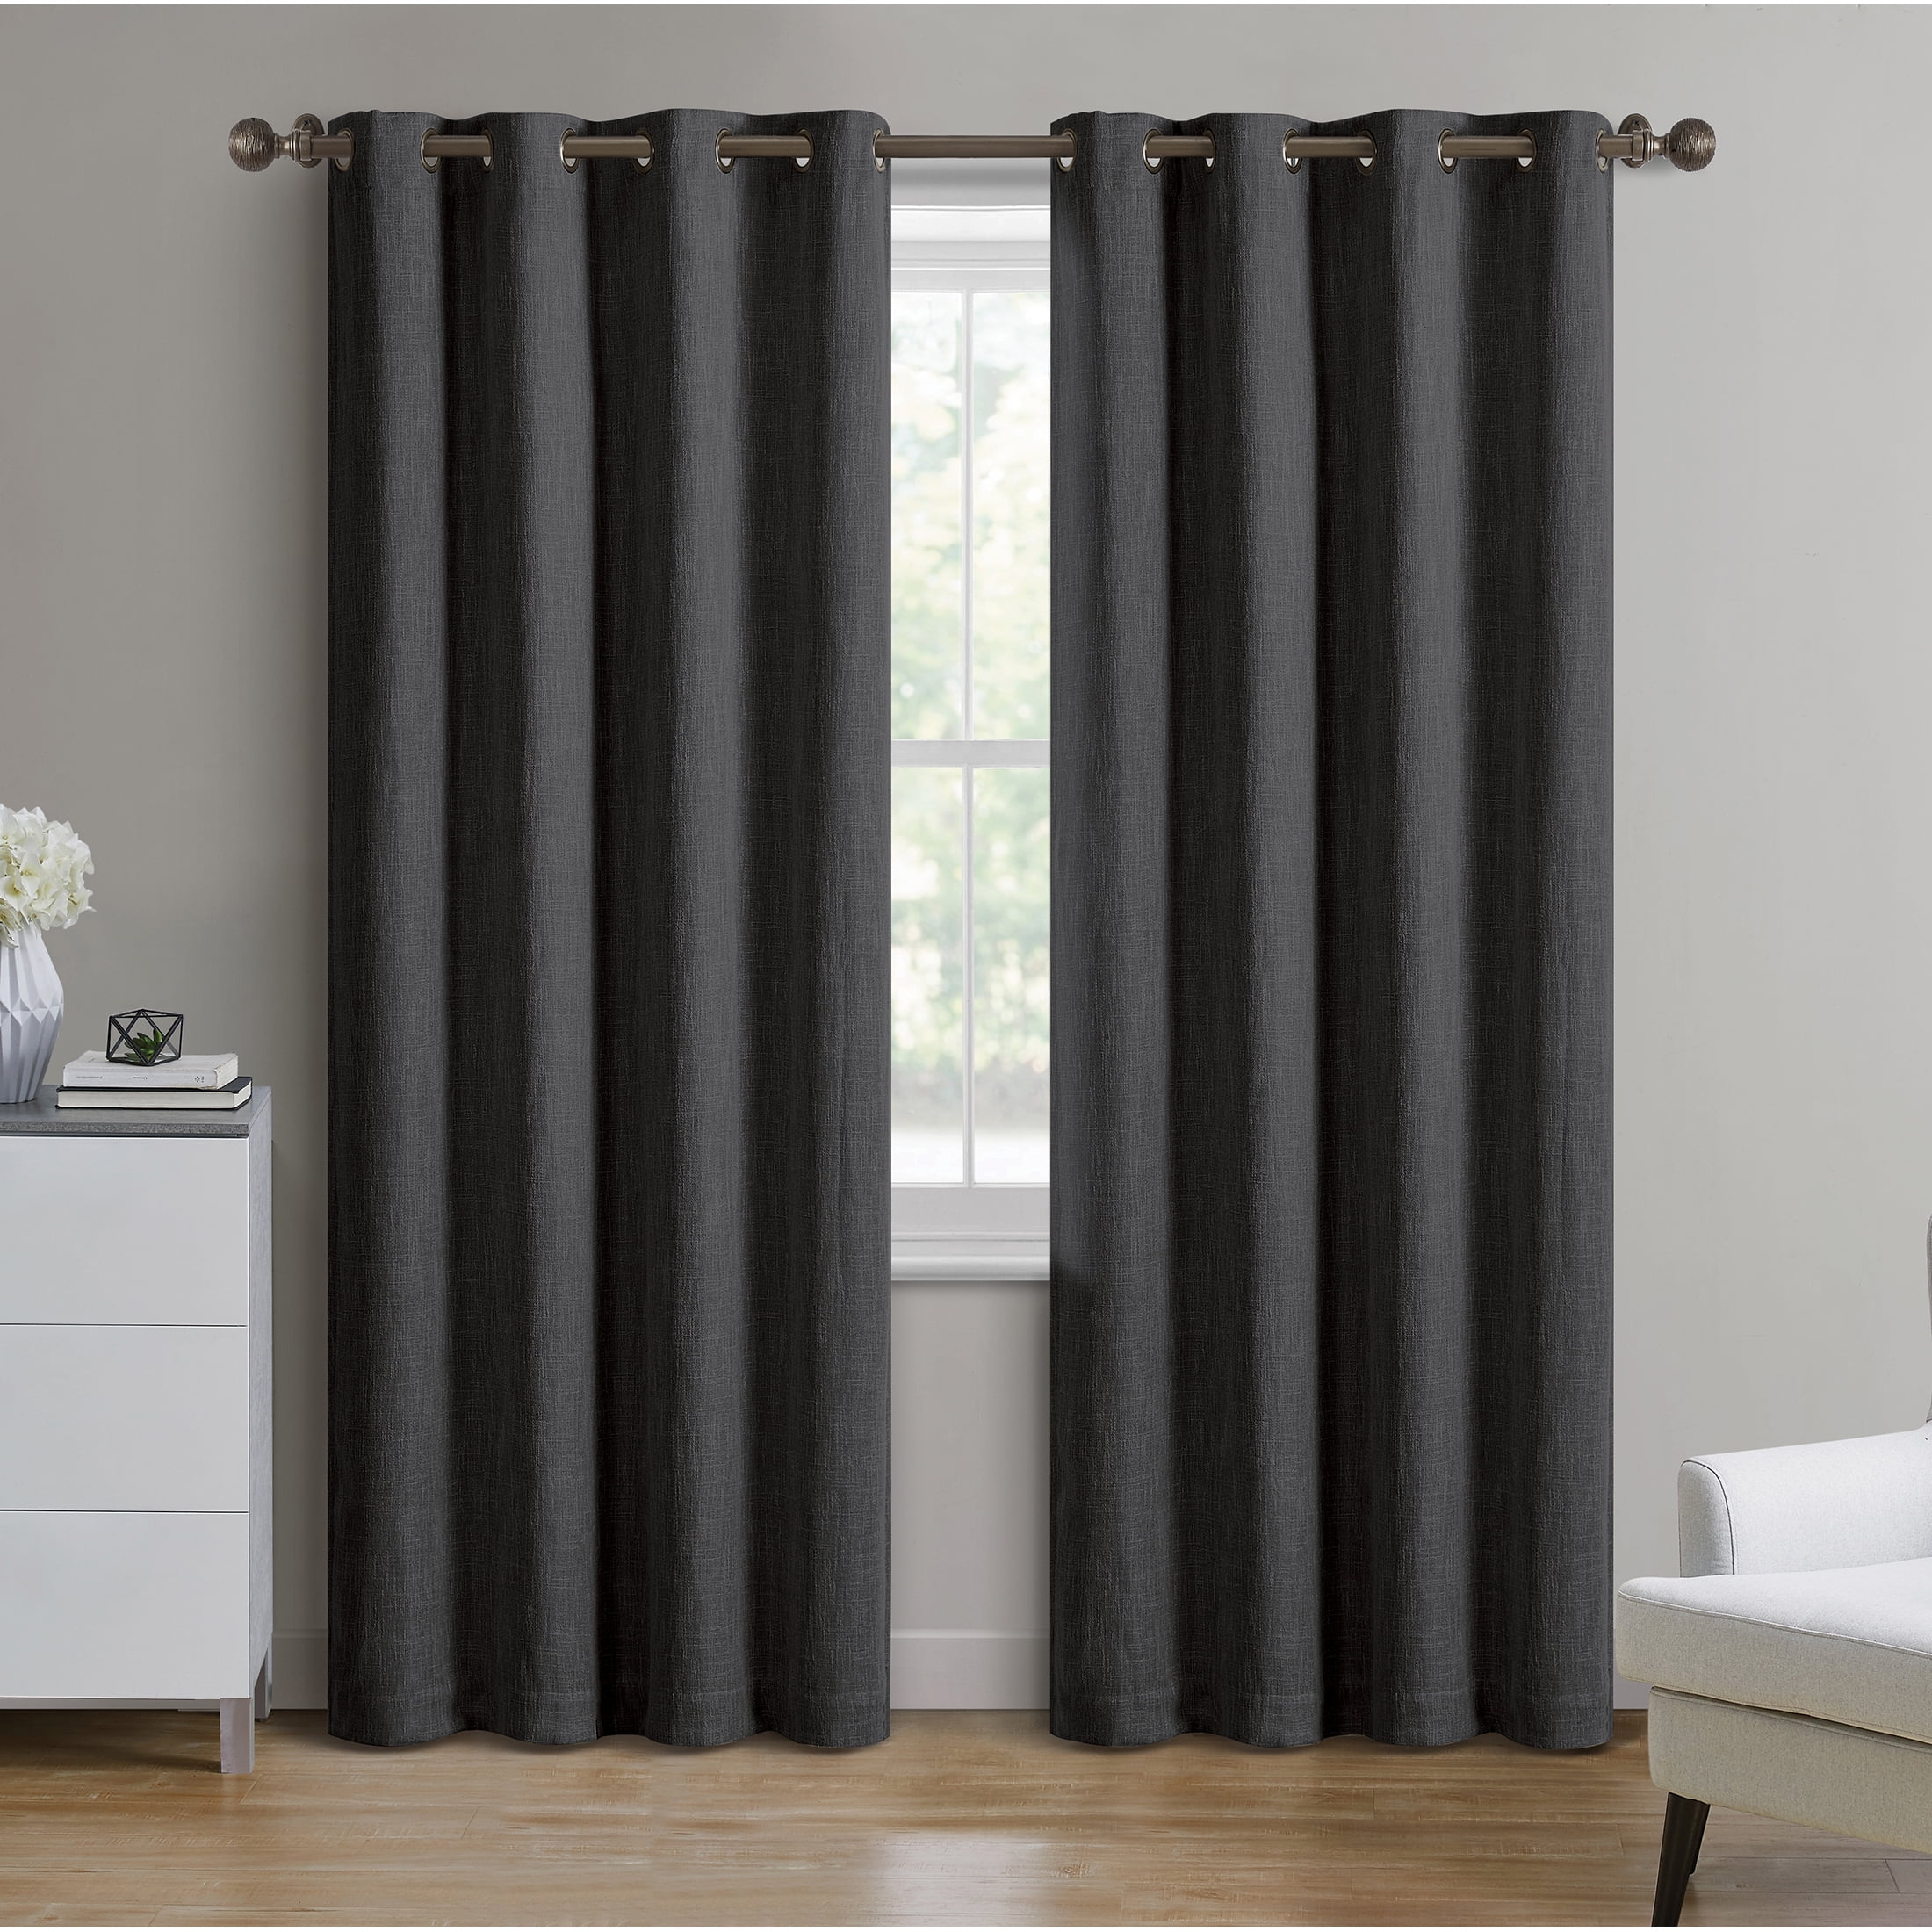 Black 11 ft H Velvet Curtain Panel w/Grommet Top Eyelets Window Treatment Drapes 